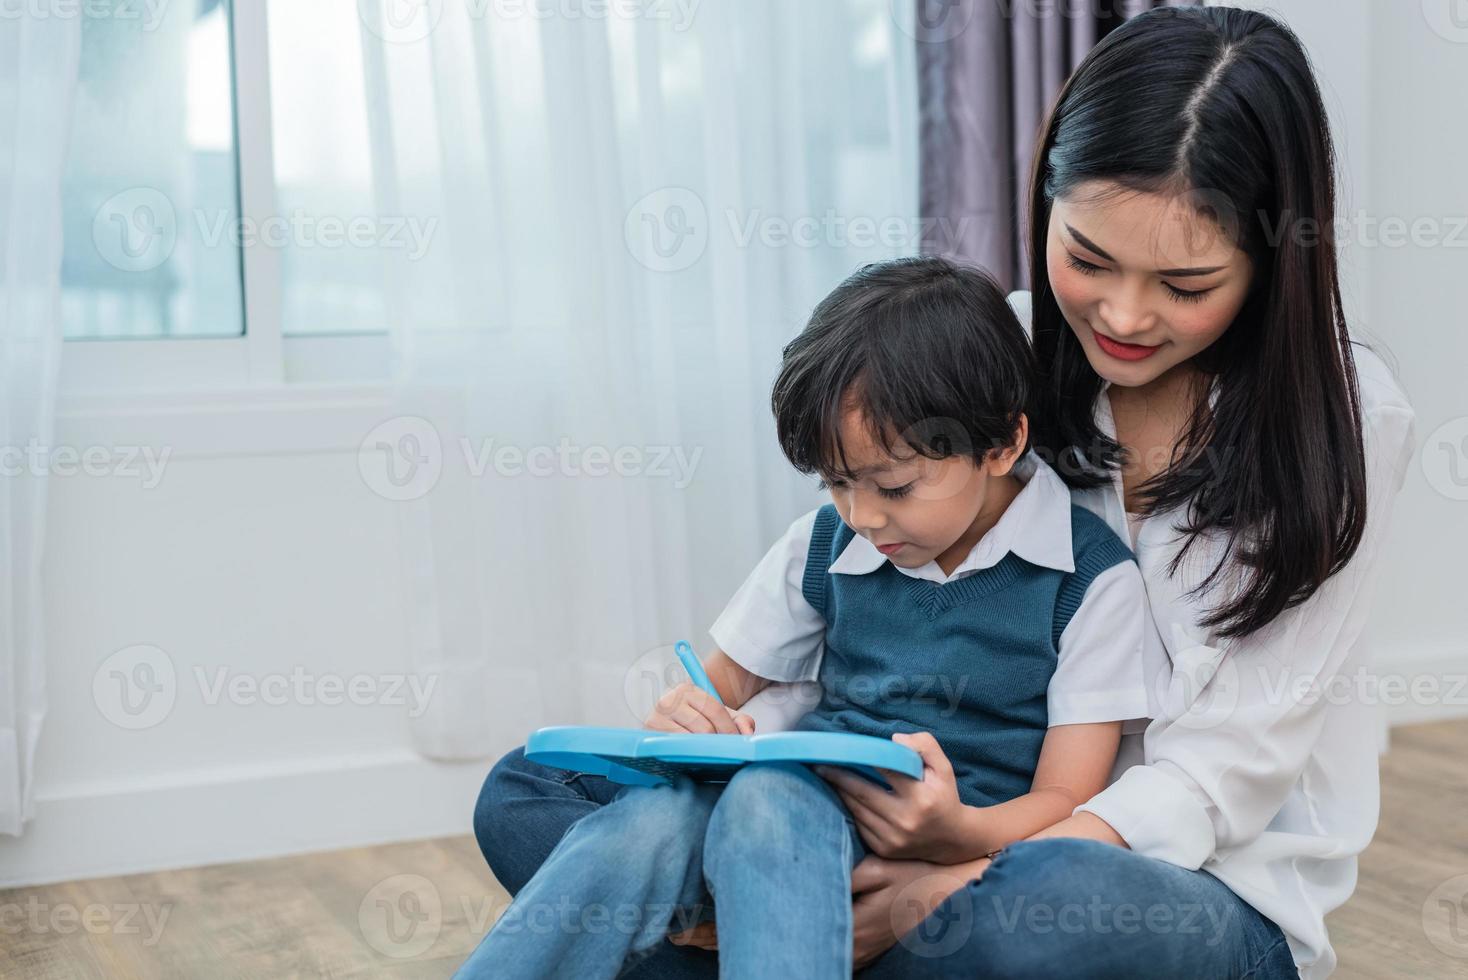 Aziatische moeder leert schattige jongen samen tekenen in schoolbord. terug naar school en onderwijsconcept. familie en home sweet home thema. thema voor kleuters foto